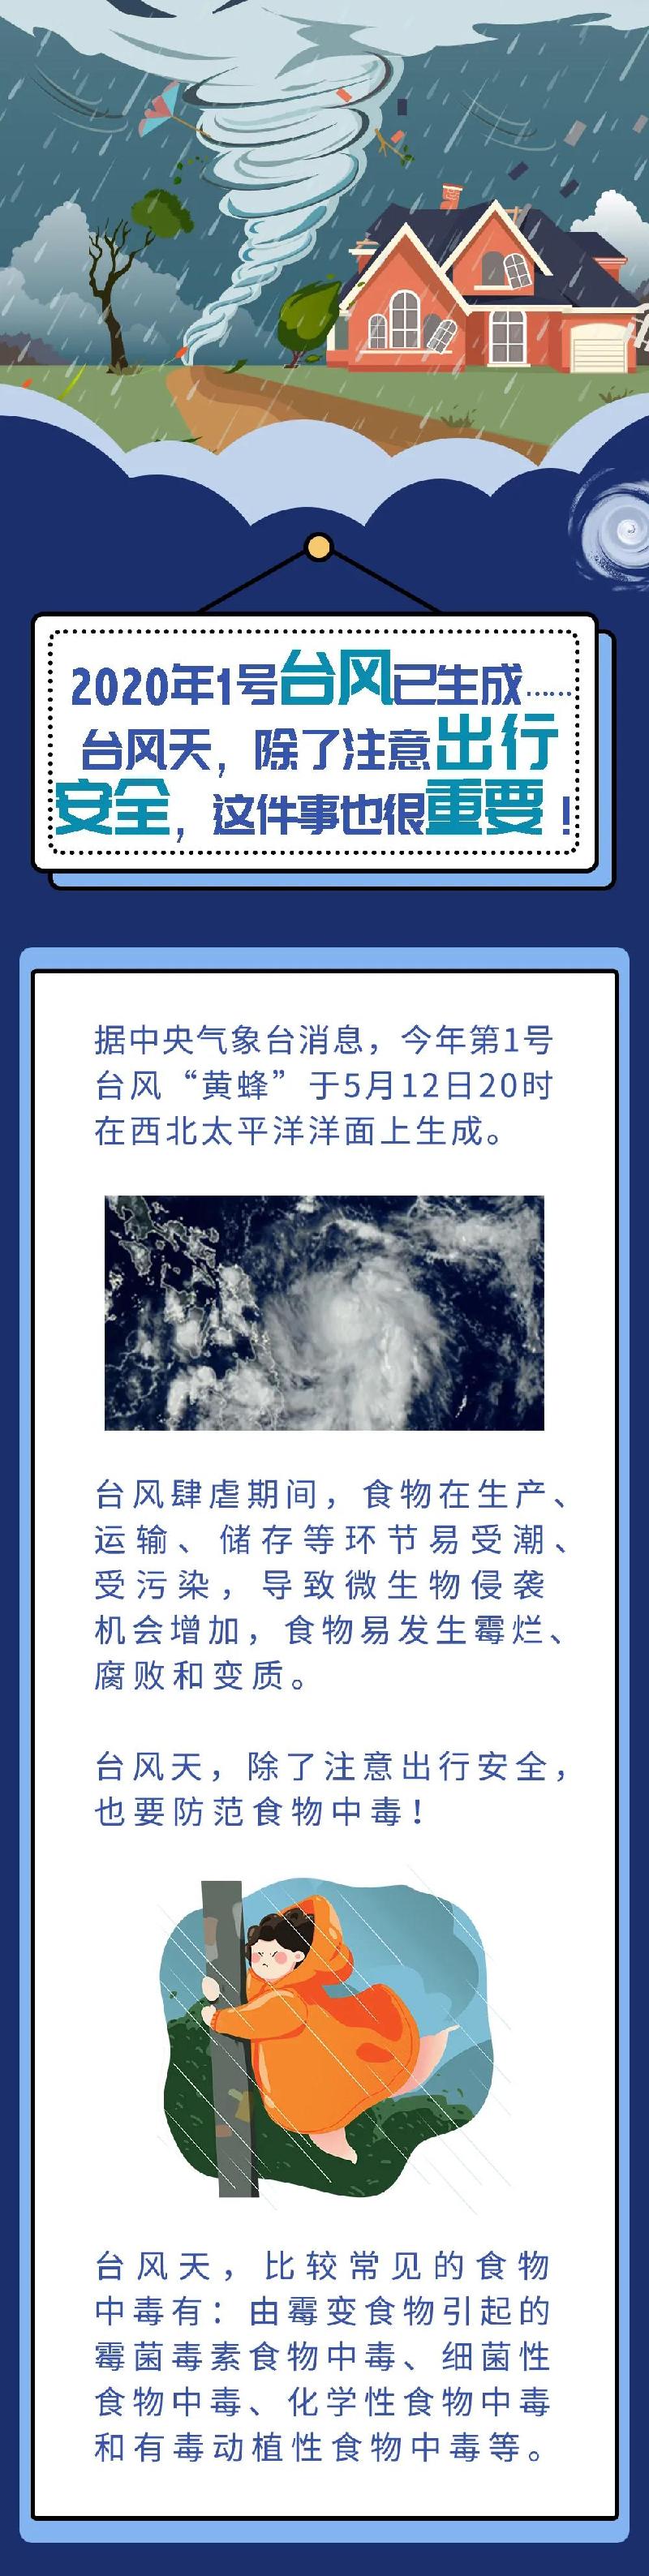 防灾减灾宣传周丨2020年1号台风已生成，台风天这些知识很重要！